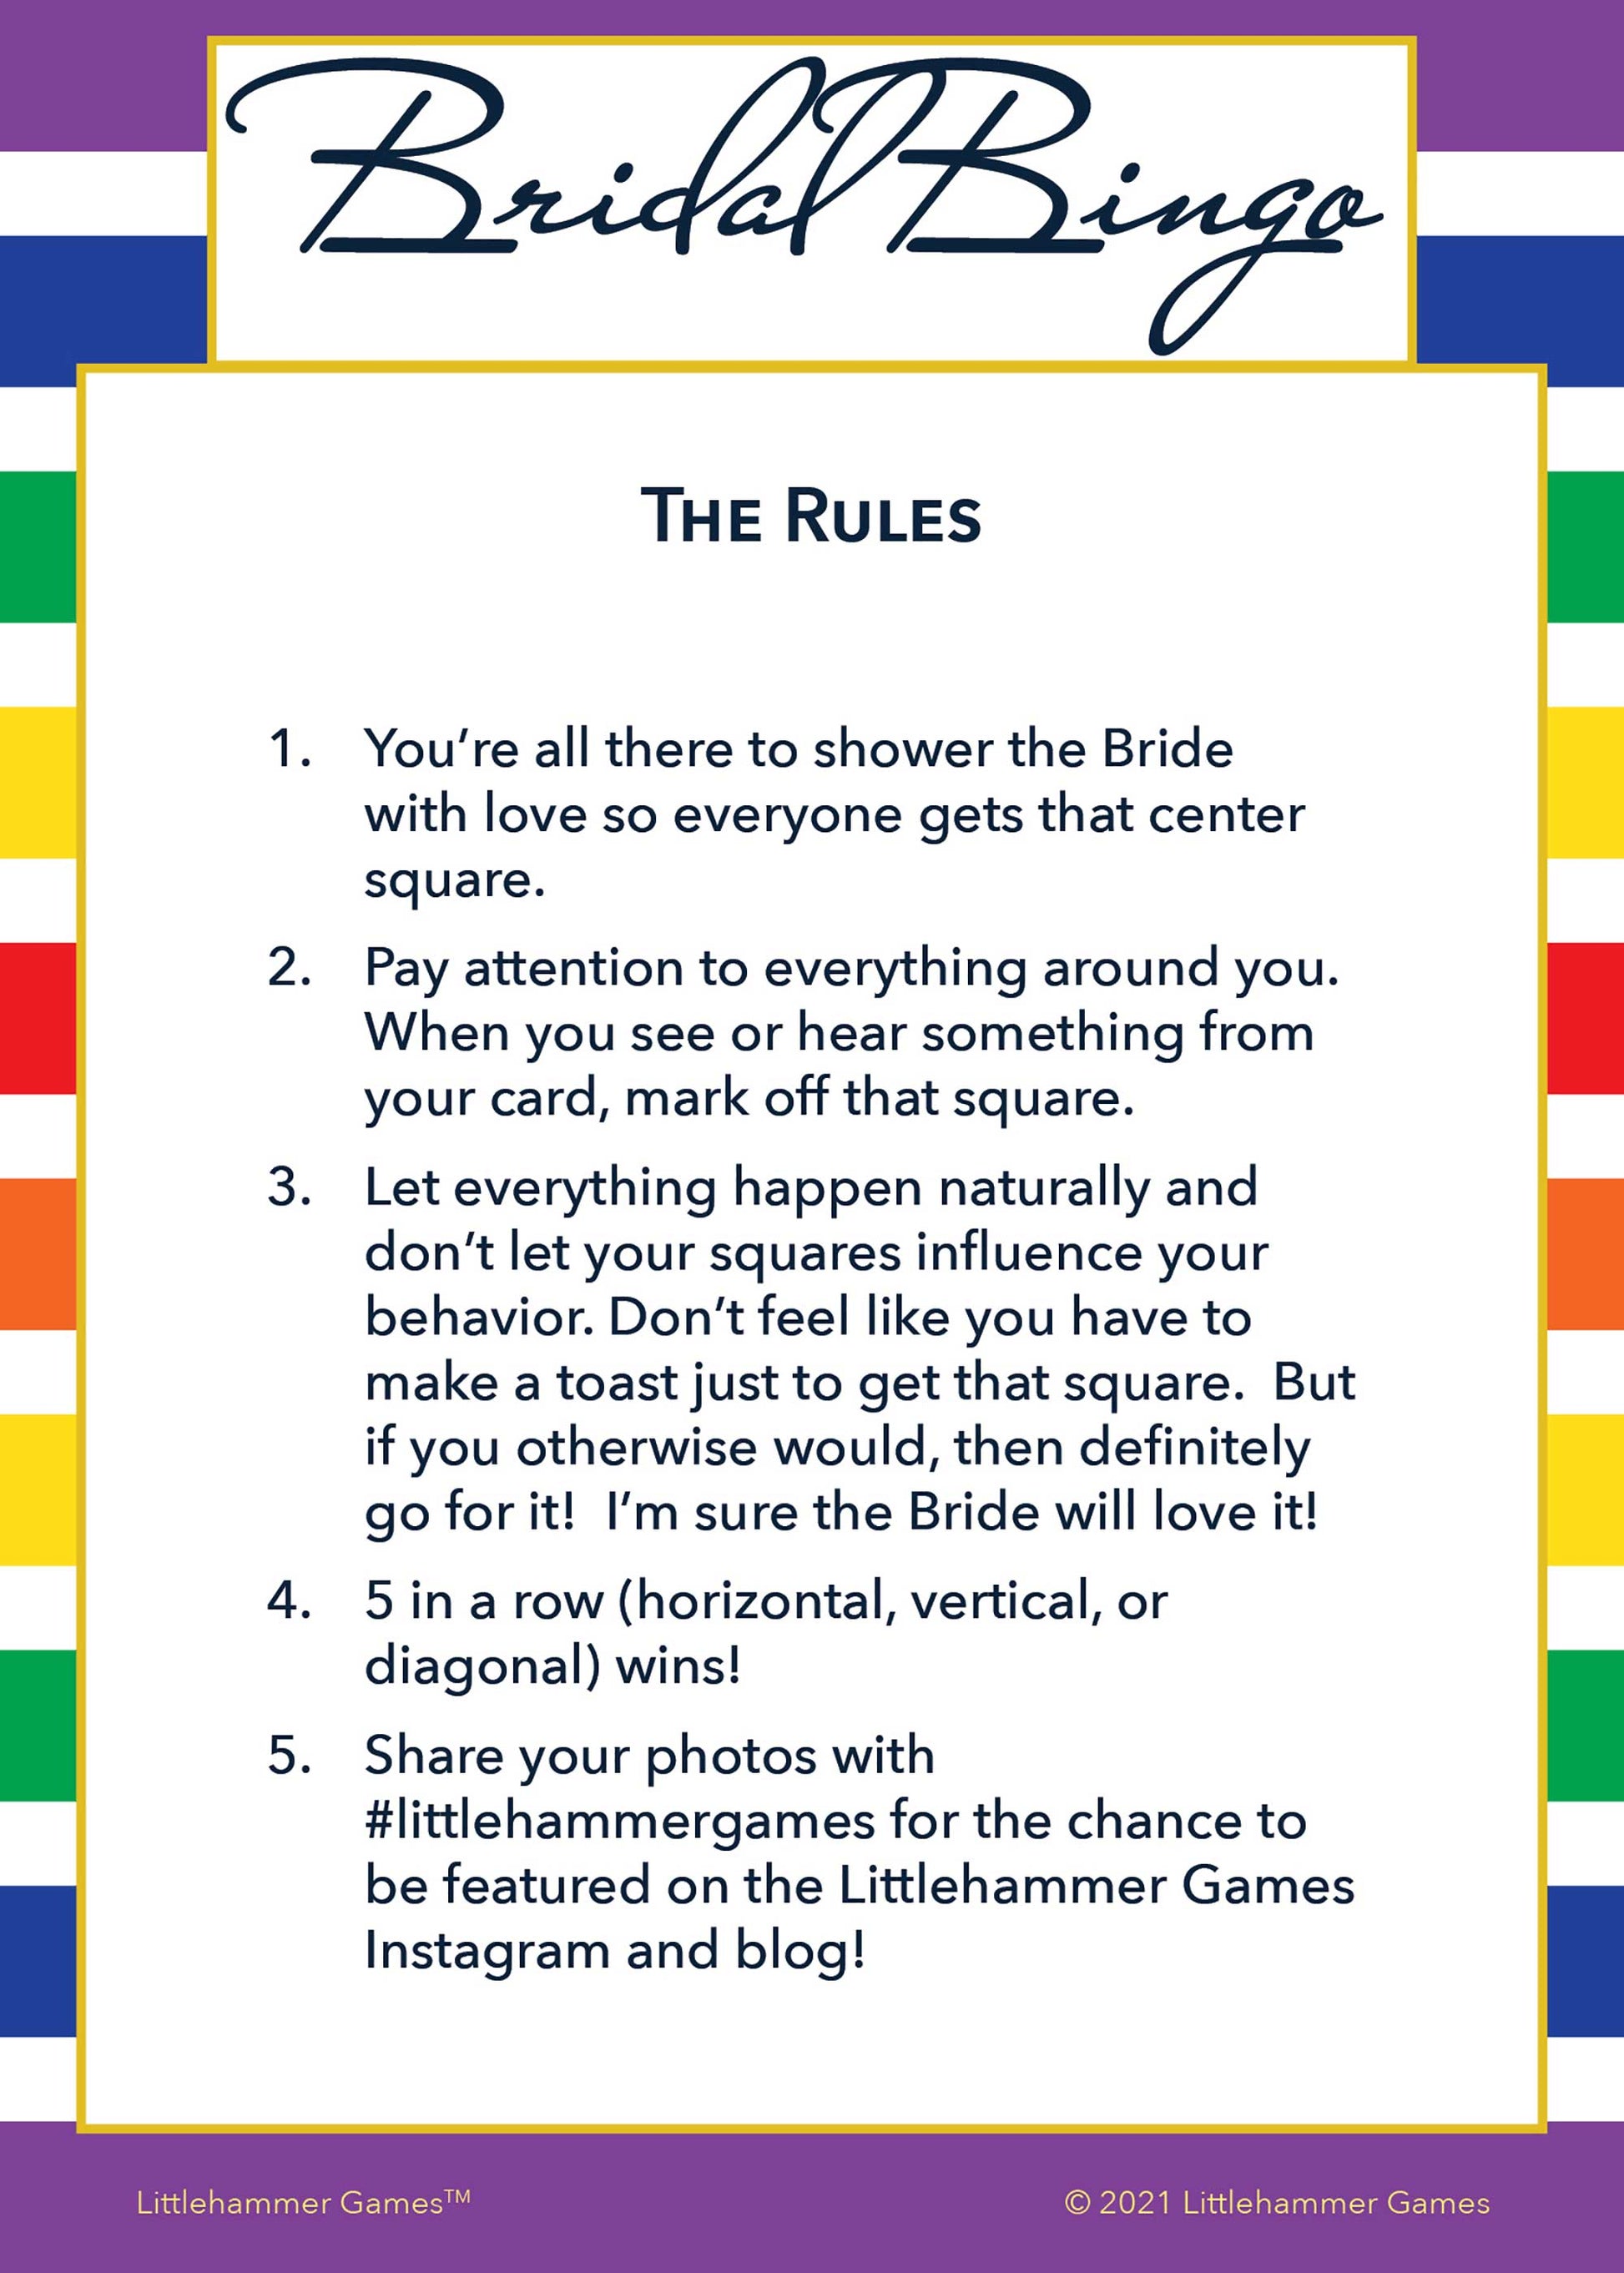 Bridal Bingo rules card on a rainbow-striped background